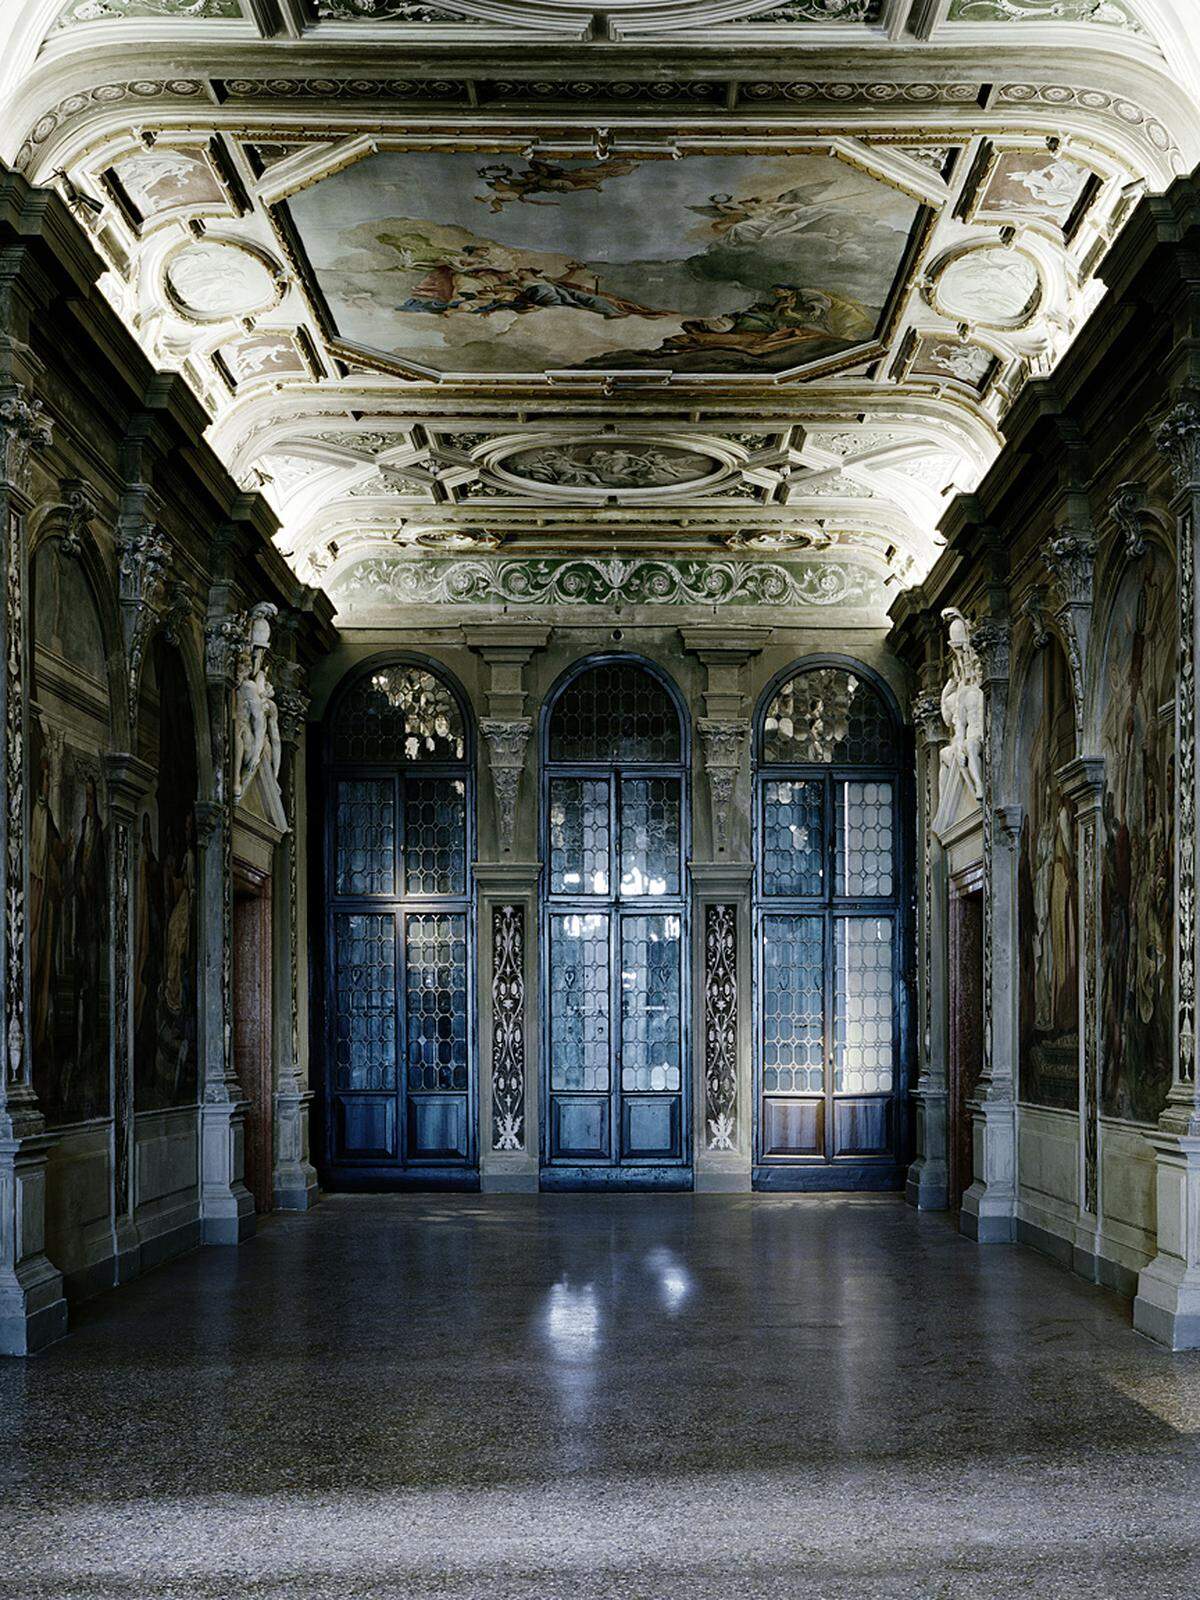 Neben Gursky und Struth ist von der berühmten Düsseldorfer Fotoschule auch Axel Hütte vertreten.   Axel Hütte: Ca'Corner della Regina-1, Italy, 2012